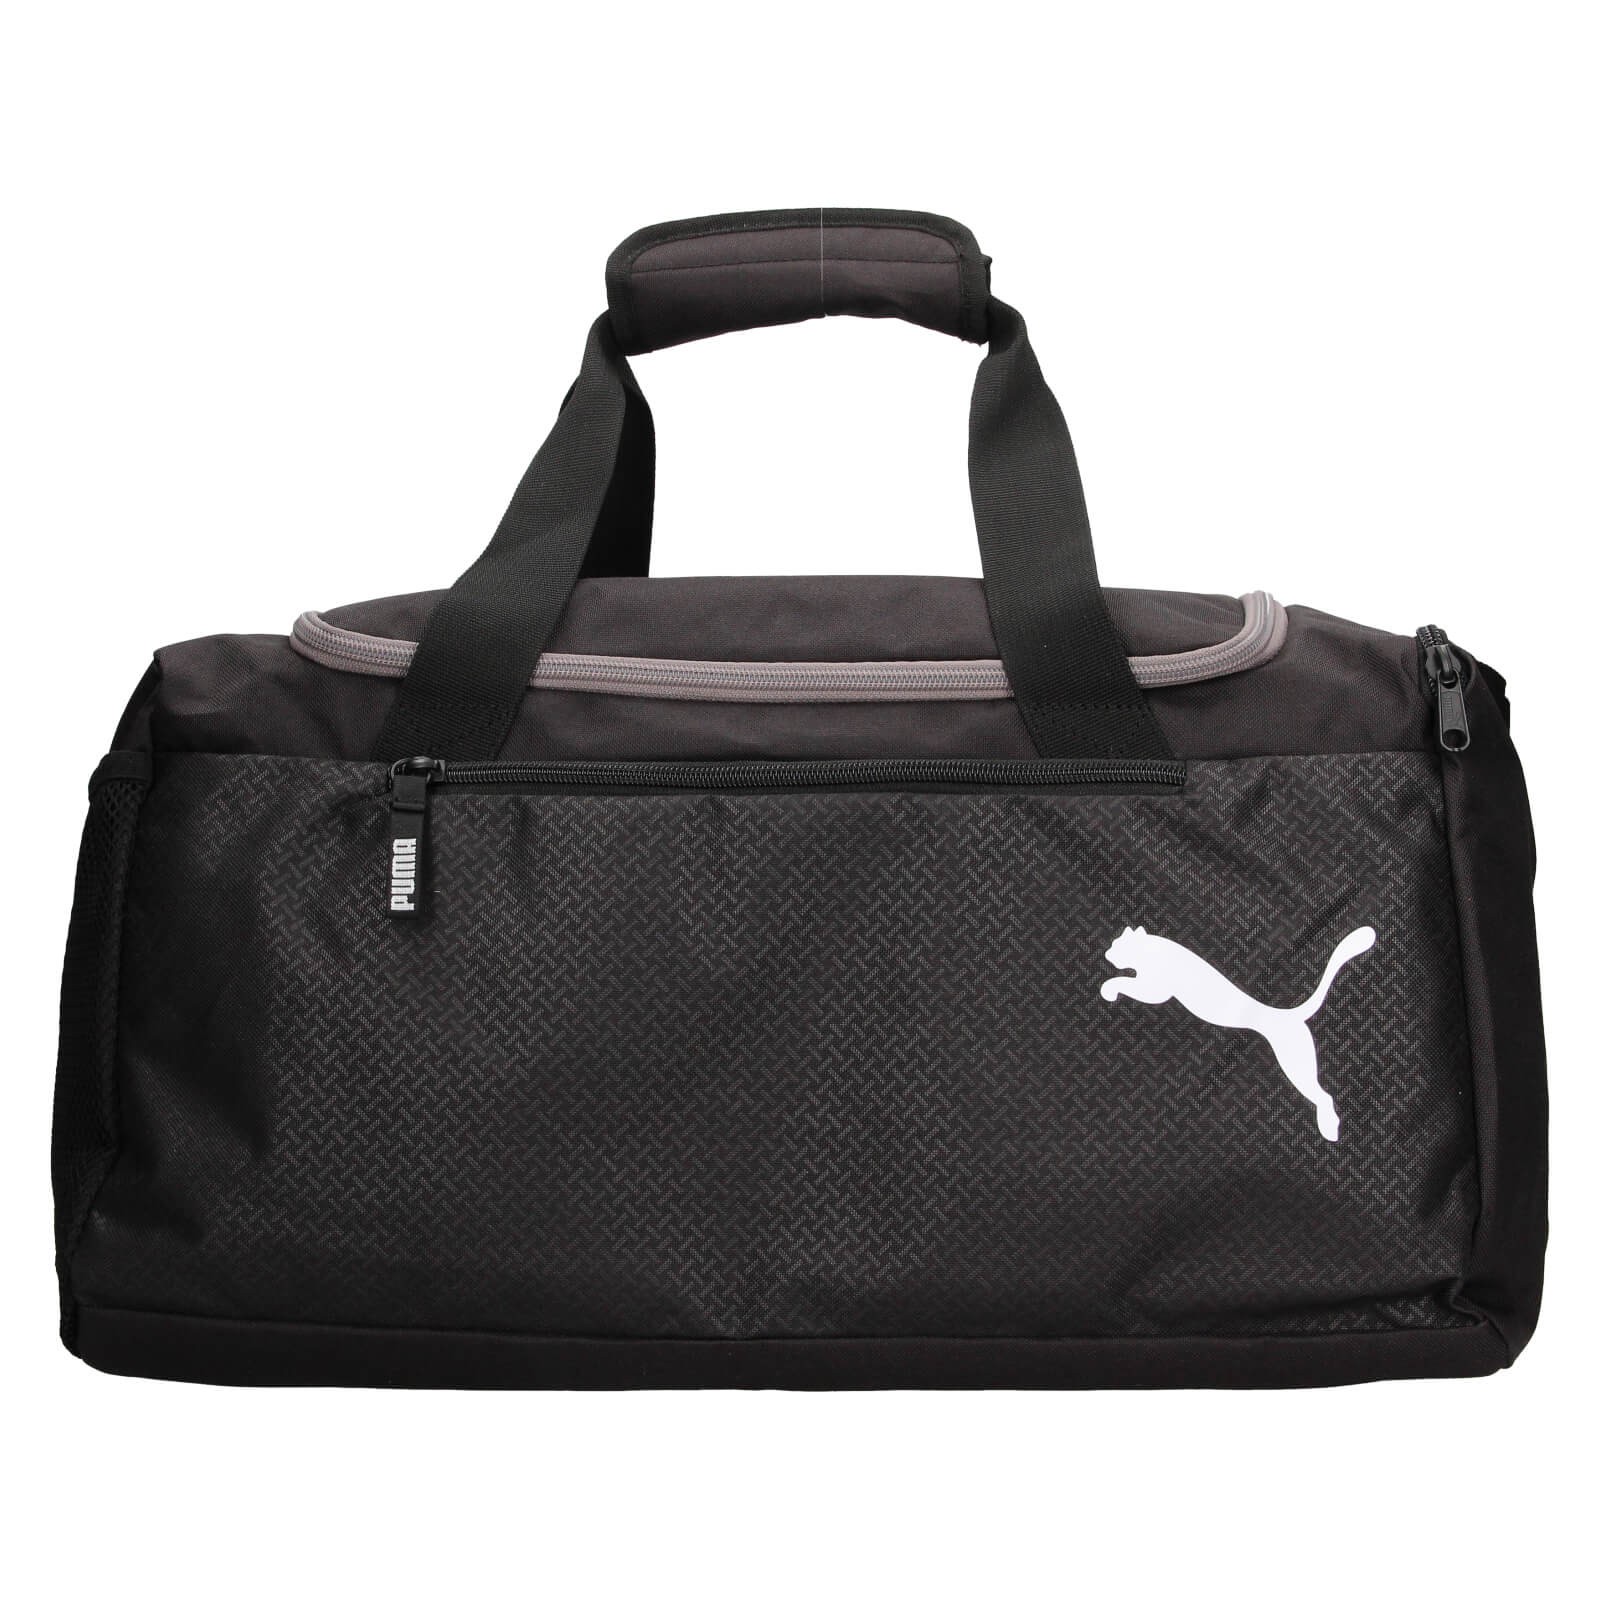 Puma Addy táska - fekete